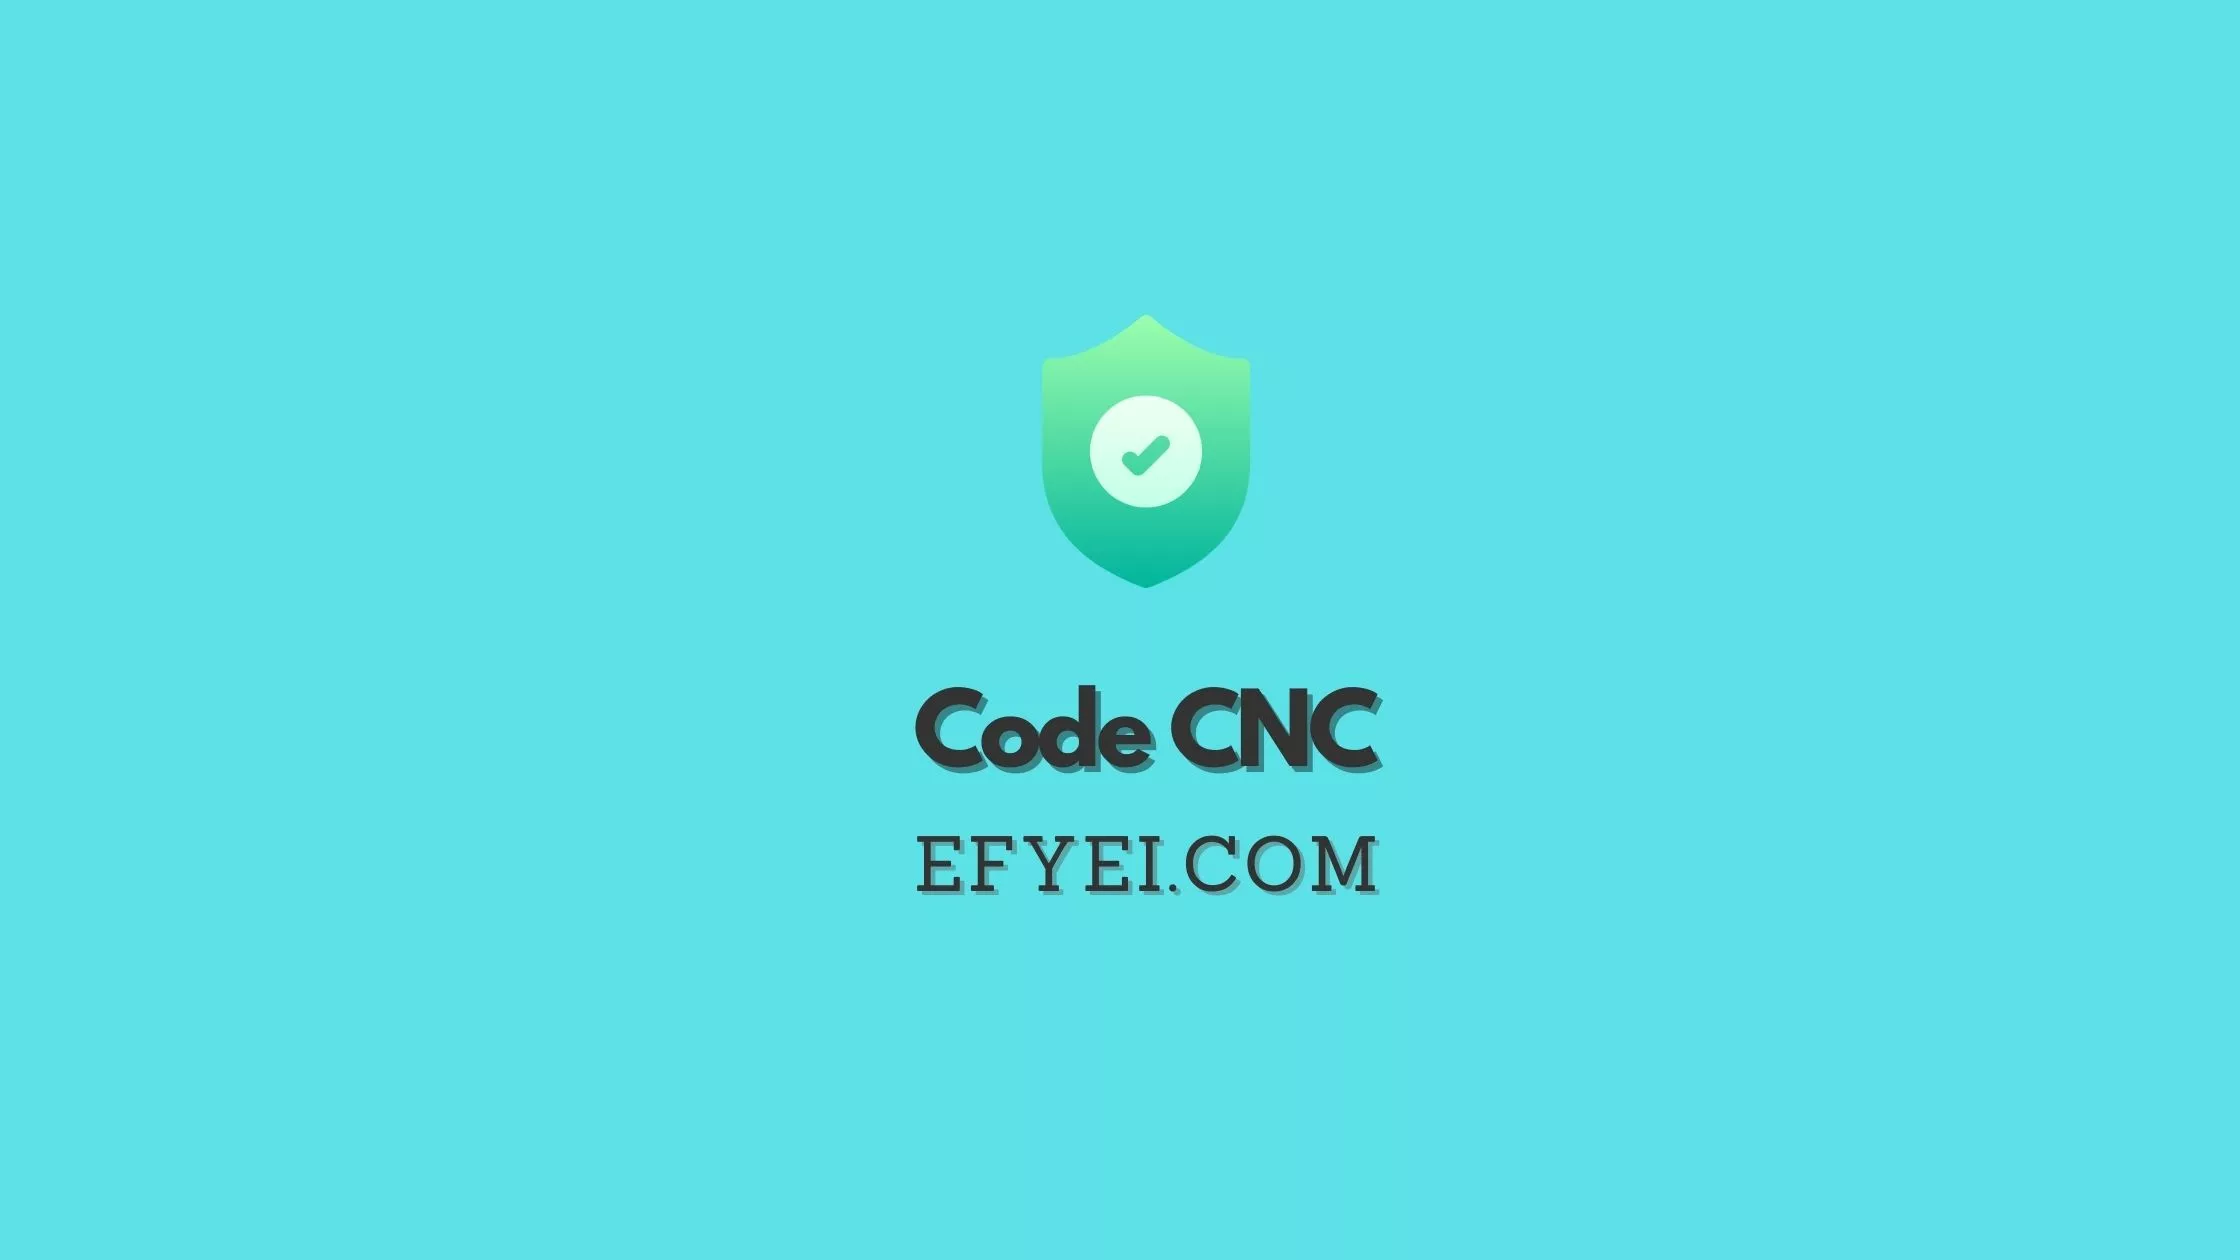 G Code CNC